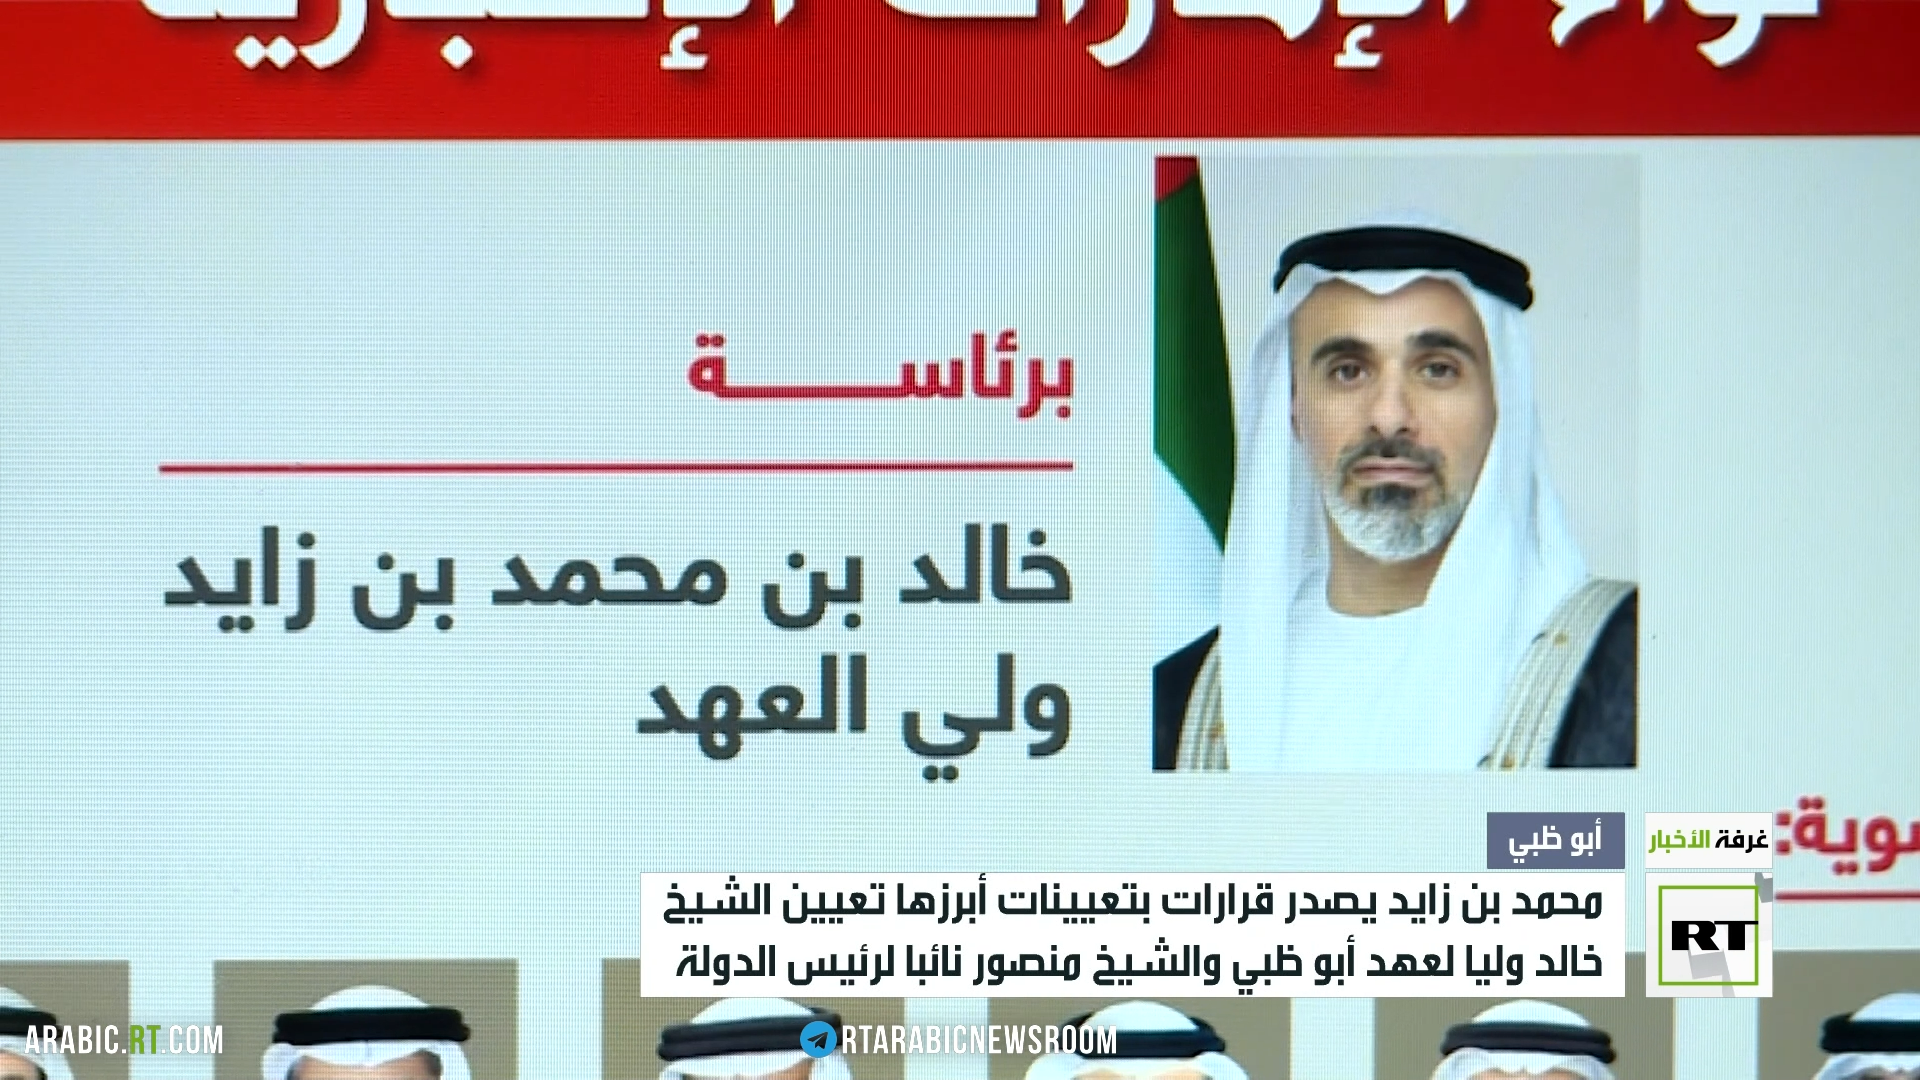 الشيخ محمد بن زايد يصدر قرارات بتعيينات جديدة في الإمارات